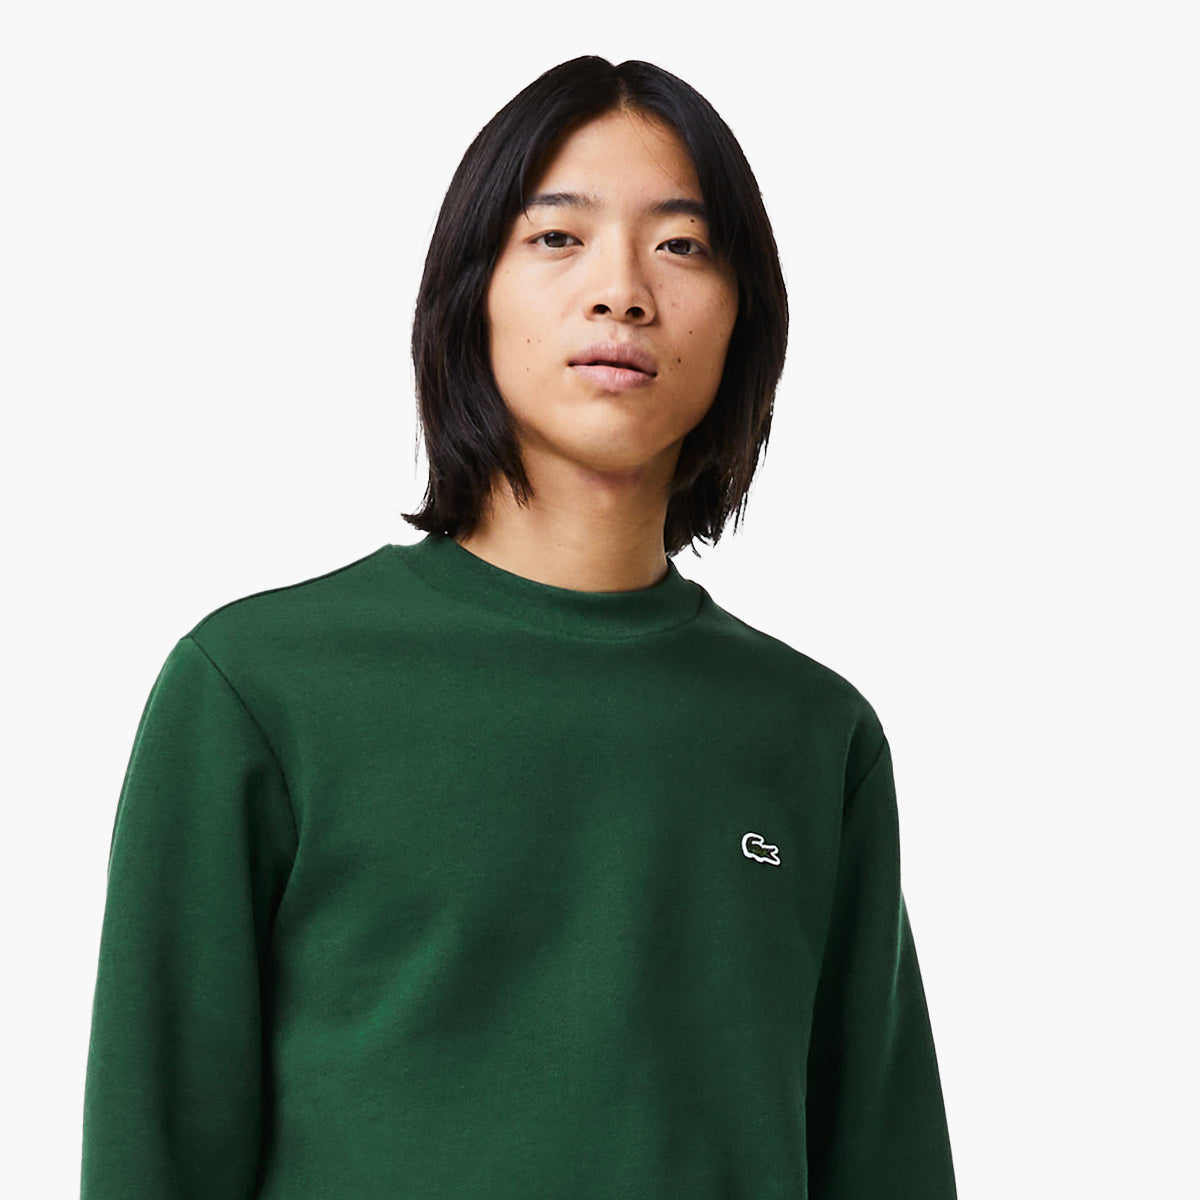 Organic Brushed Cotton Sweatshirt – Levisons